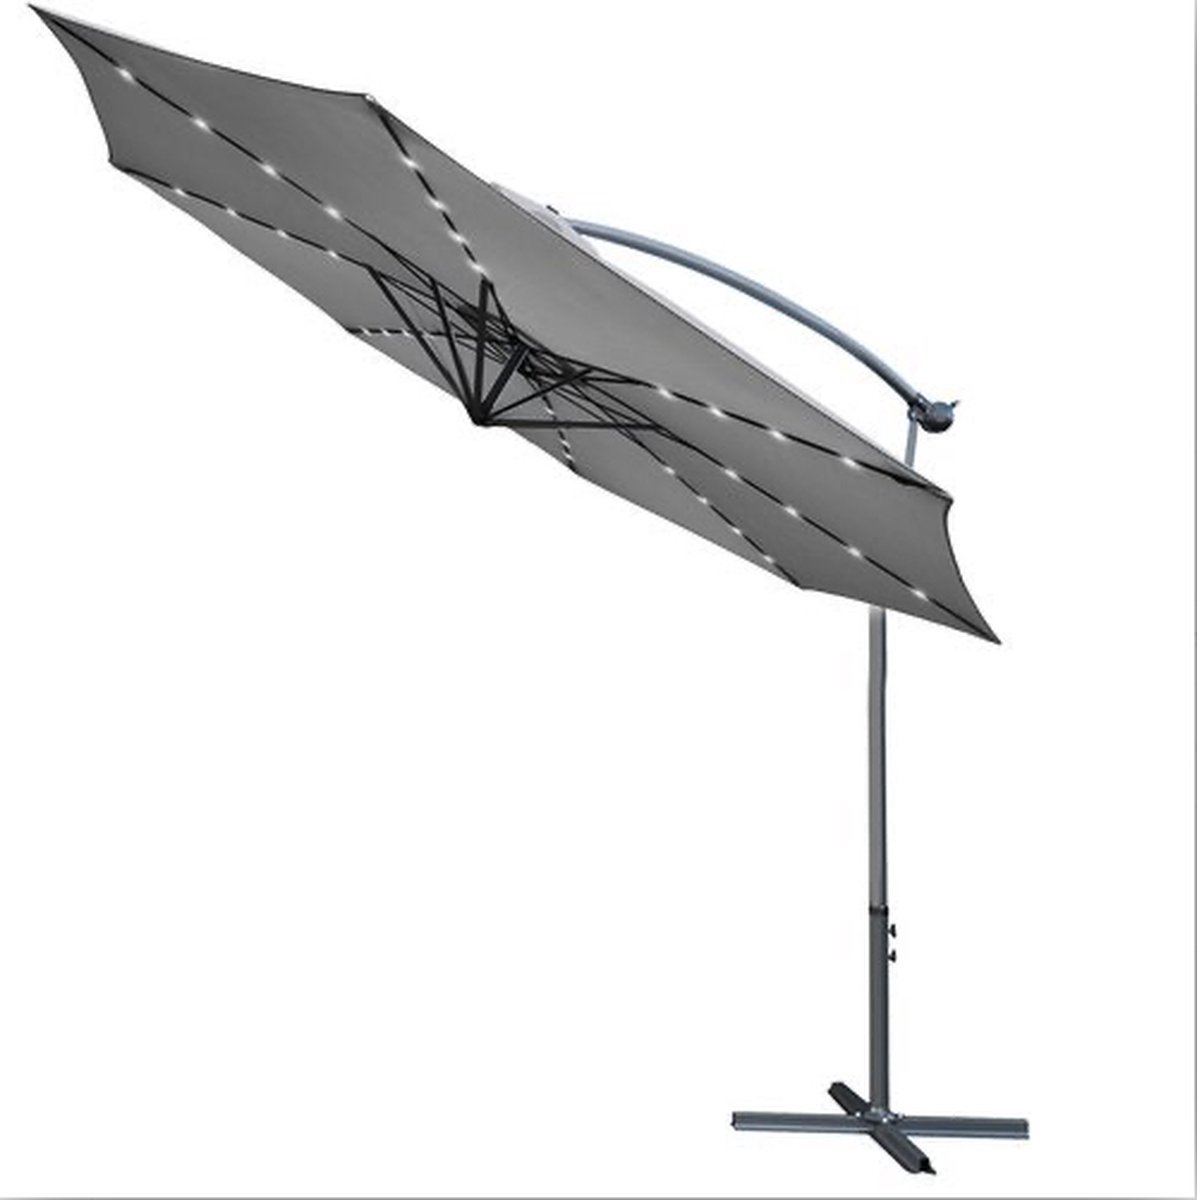 EASTWALL Parasol met LED-verlichting – Verstelbare arm – Zweefparasol – Inclusief parasolvoet – Tuin parasol – 245x350cm – UV werend doek – Stokparasol – Grijs – Lange gebruikstijd – Eenvoudig verstelbaar – Solar verlichting